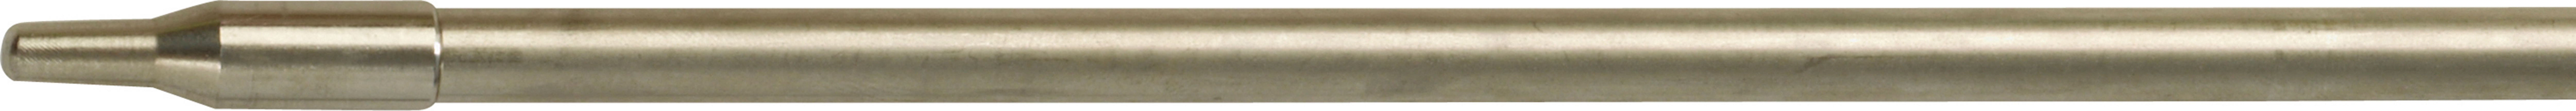 Šíp so závitom pre pneumatické harpúny Ø 8.0 mm 